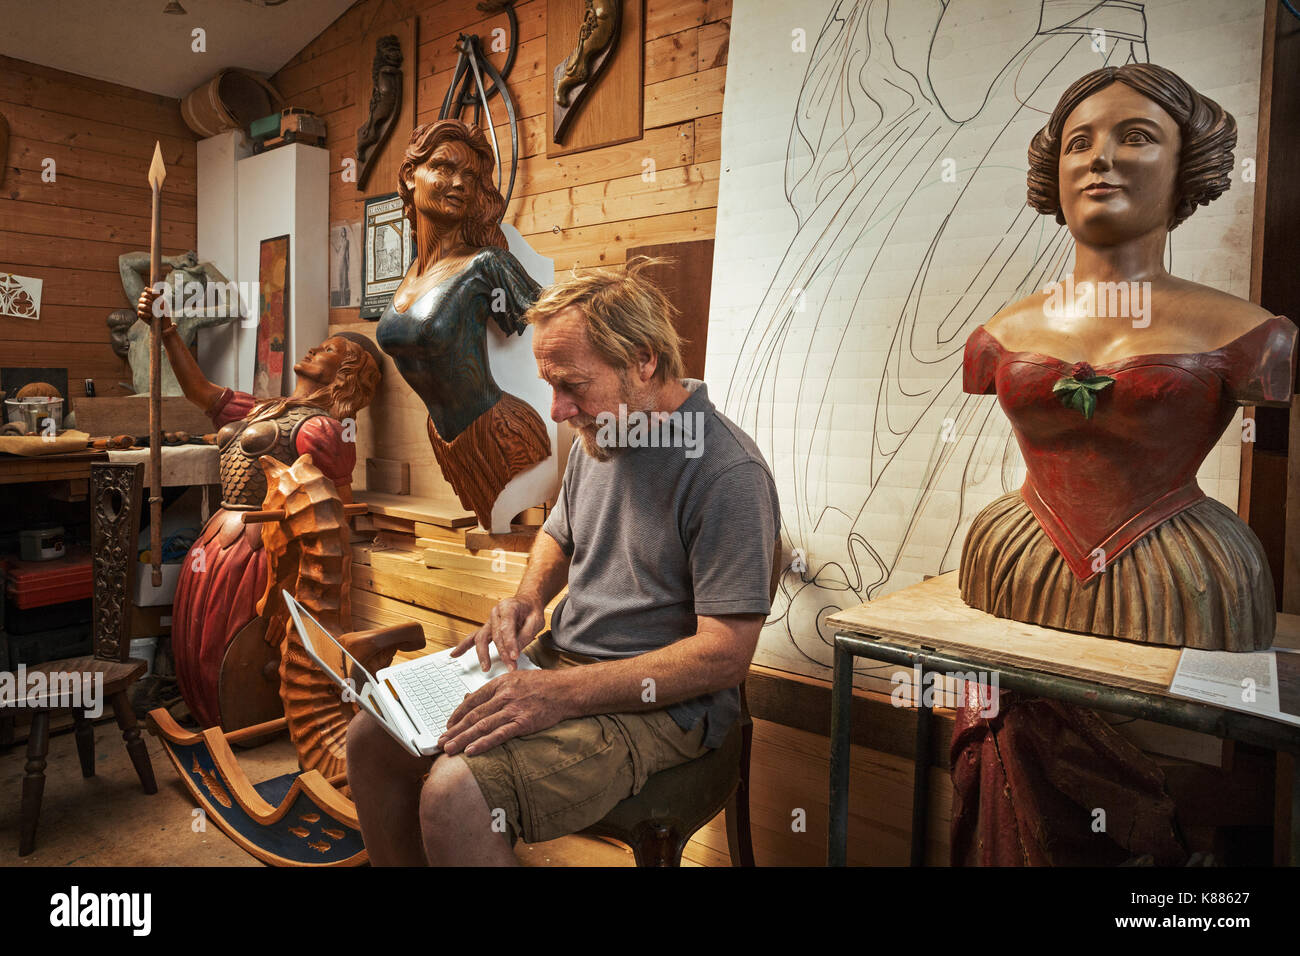 Un falegname, artigiano seduta in una officina con un laptop sulle ginocchia, circondata da legno intagliato femmina della nave figureheads. Foto Stock